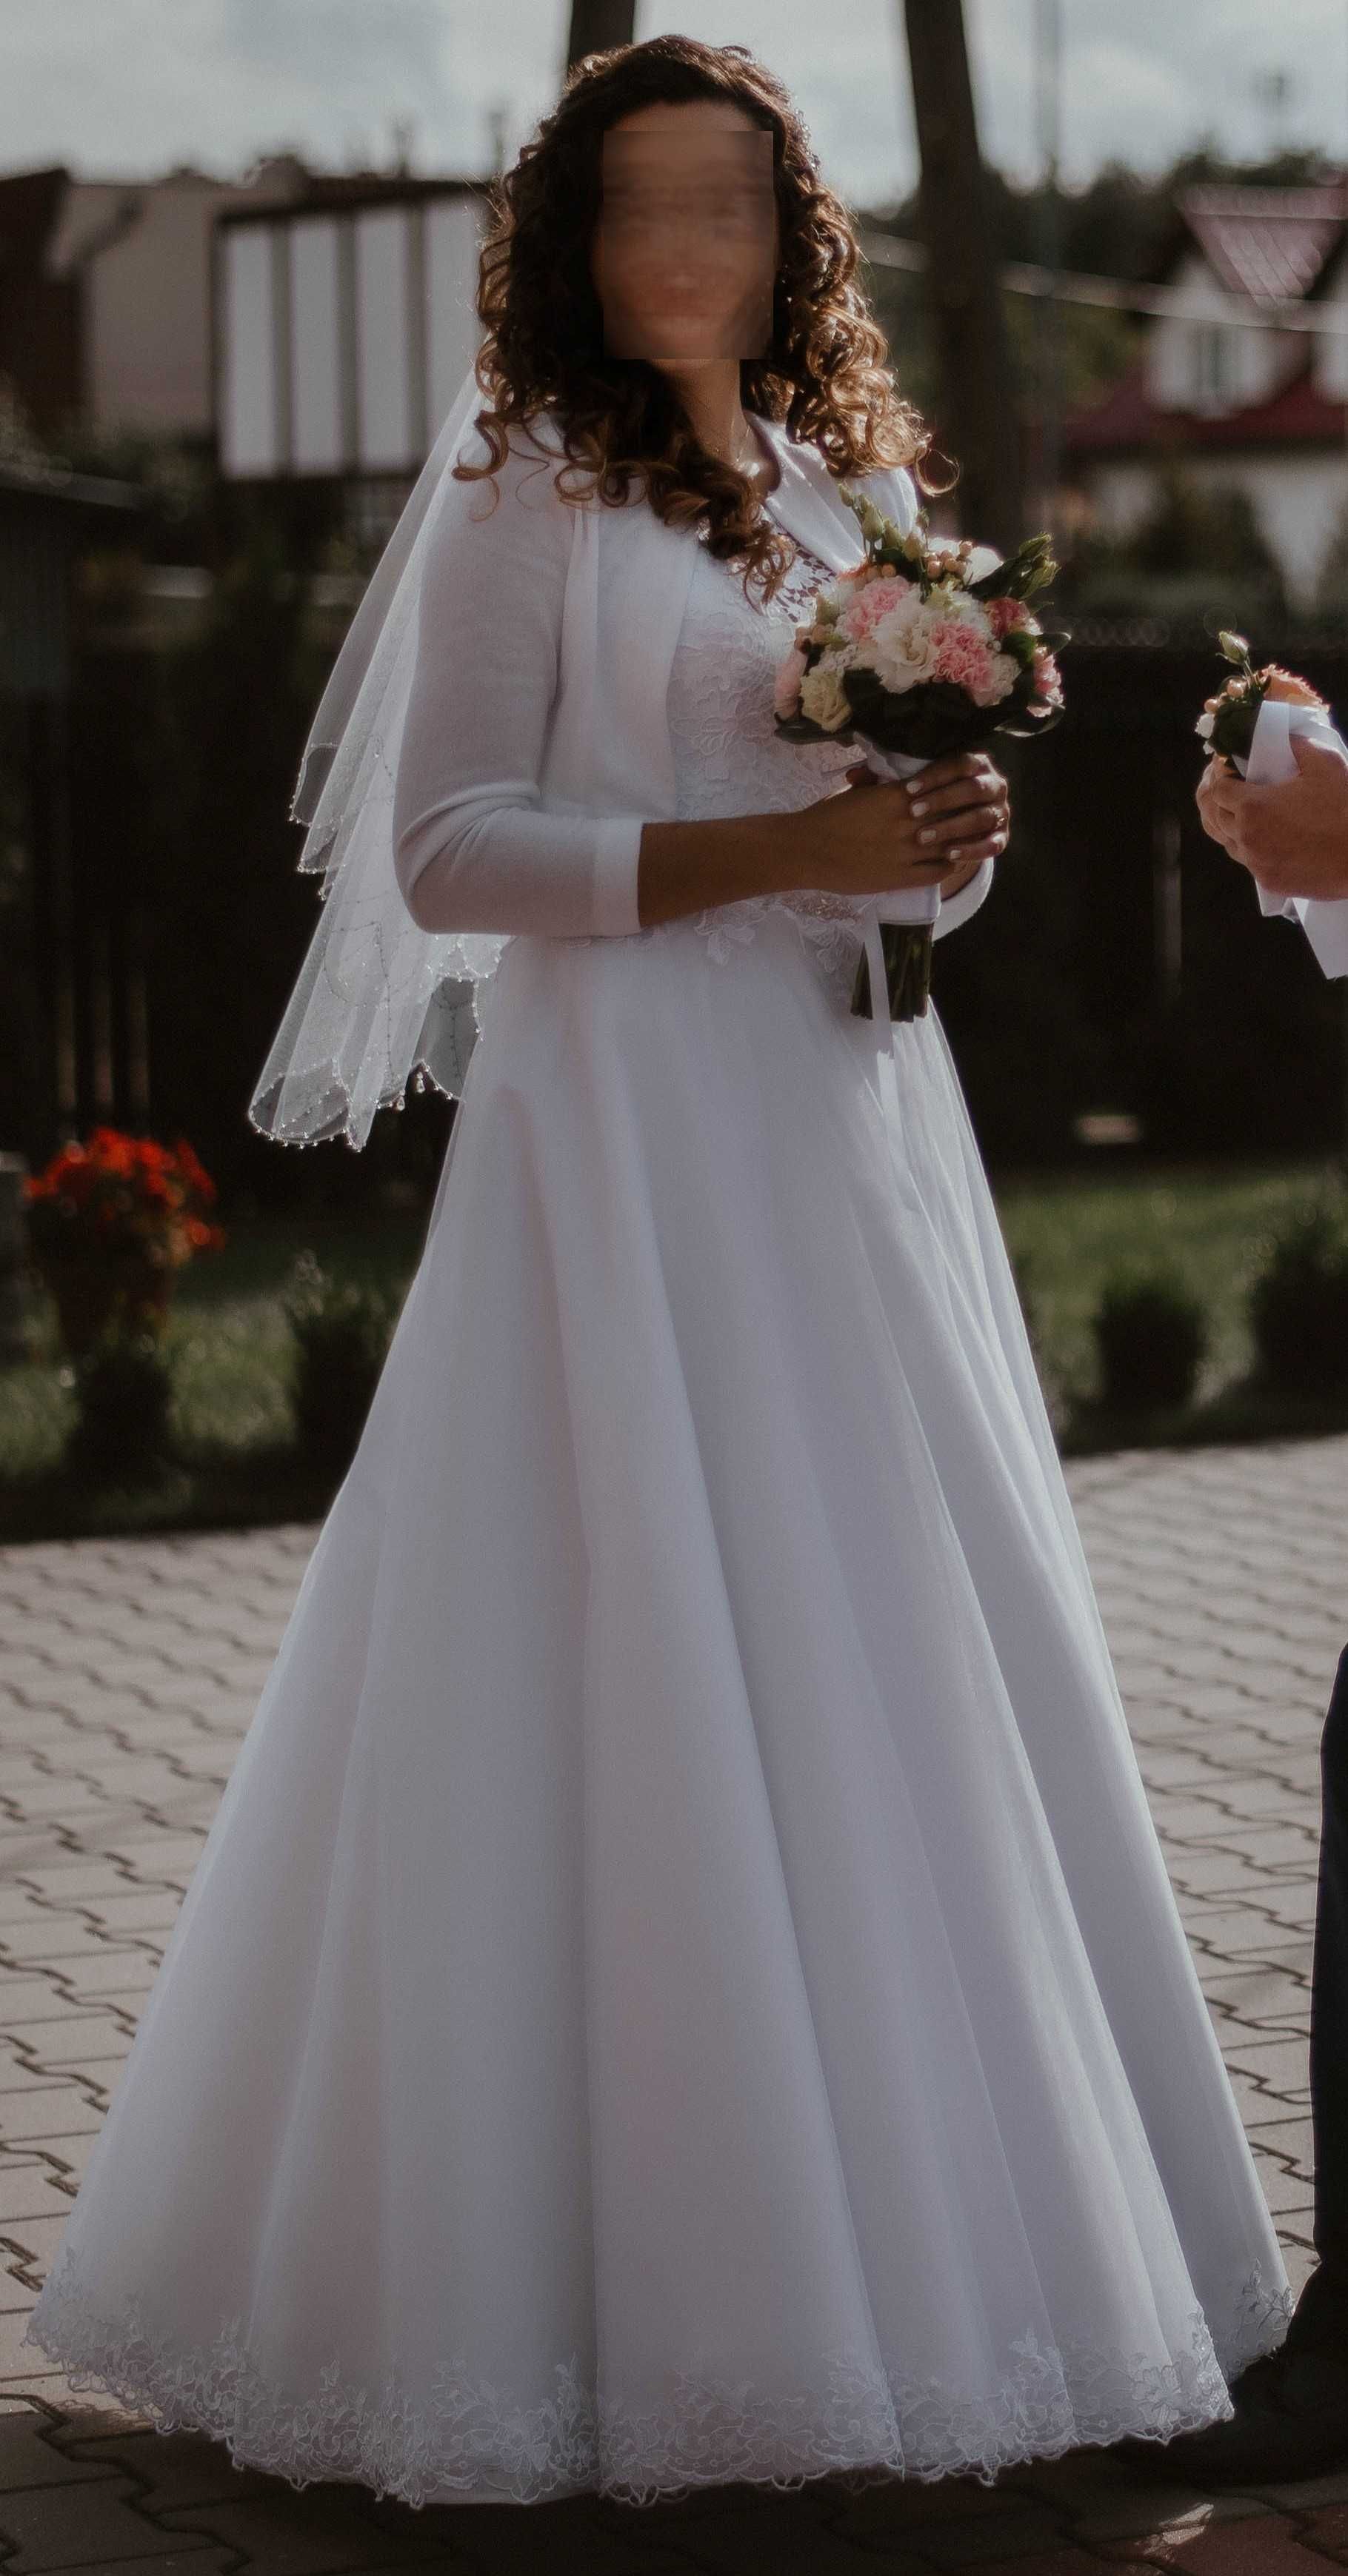 Suknia ślubna biała rozmiar 38 z bolerkiem, welonem i halką na kole